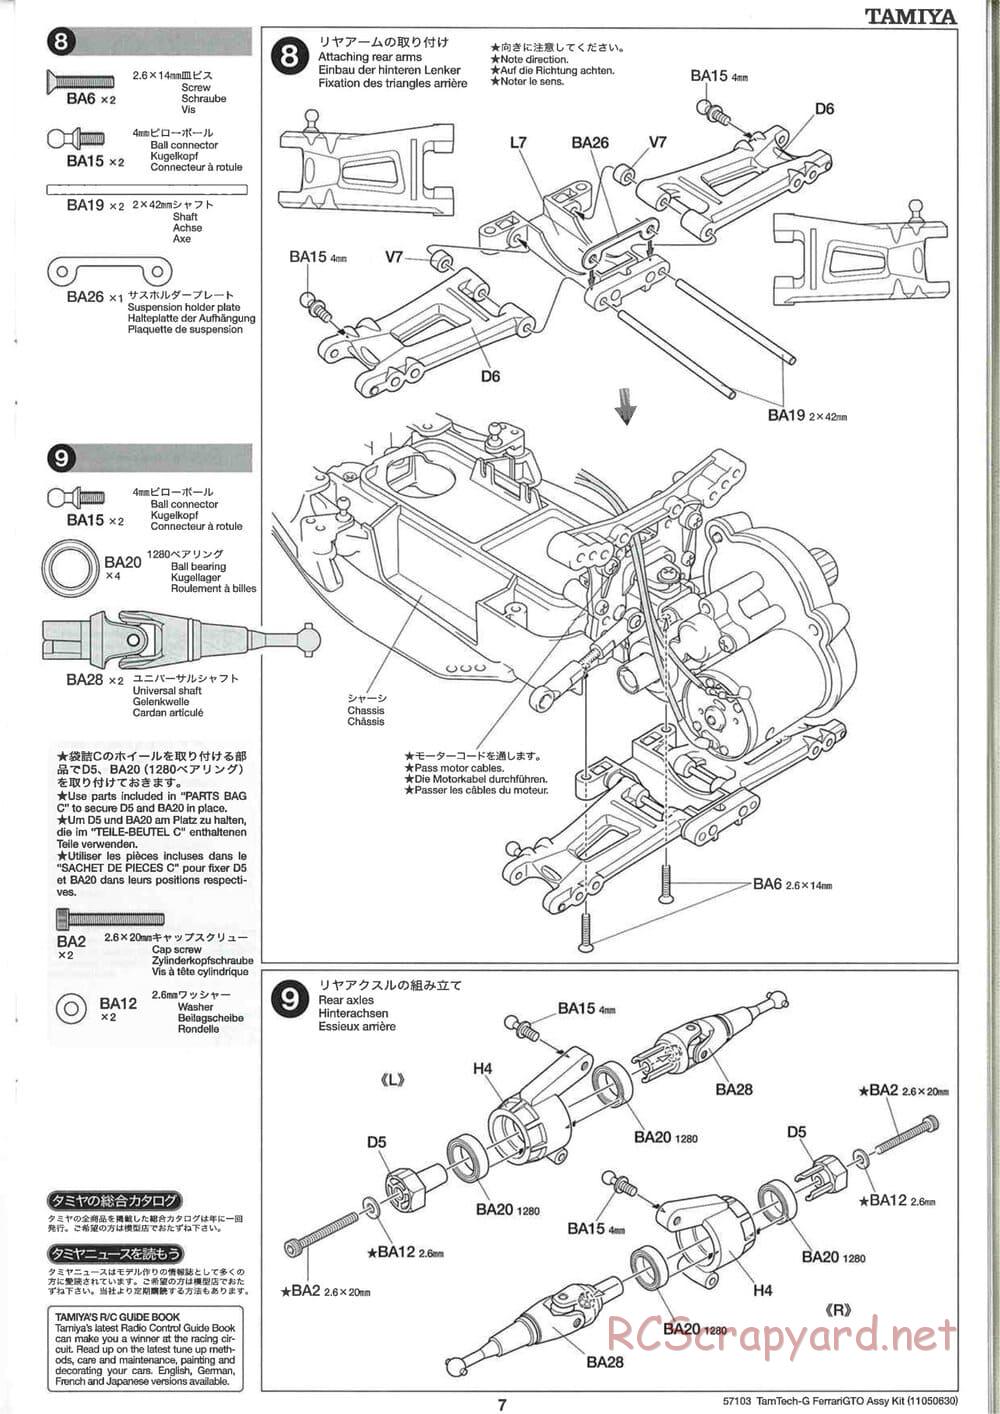 Tamiya - Ferrari 288 GTO - GT-01 Chassis - Manual - Page 7